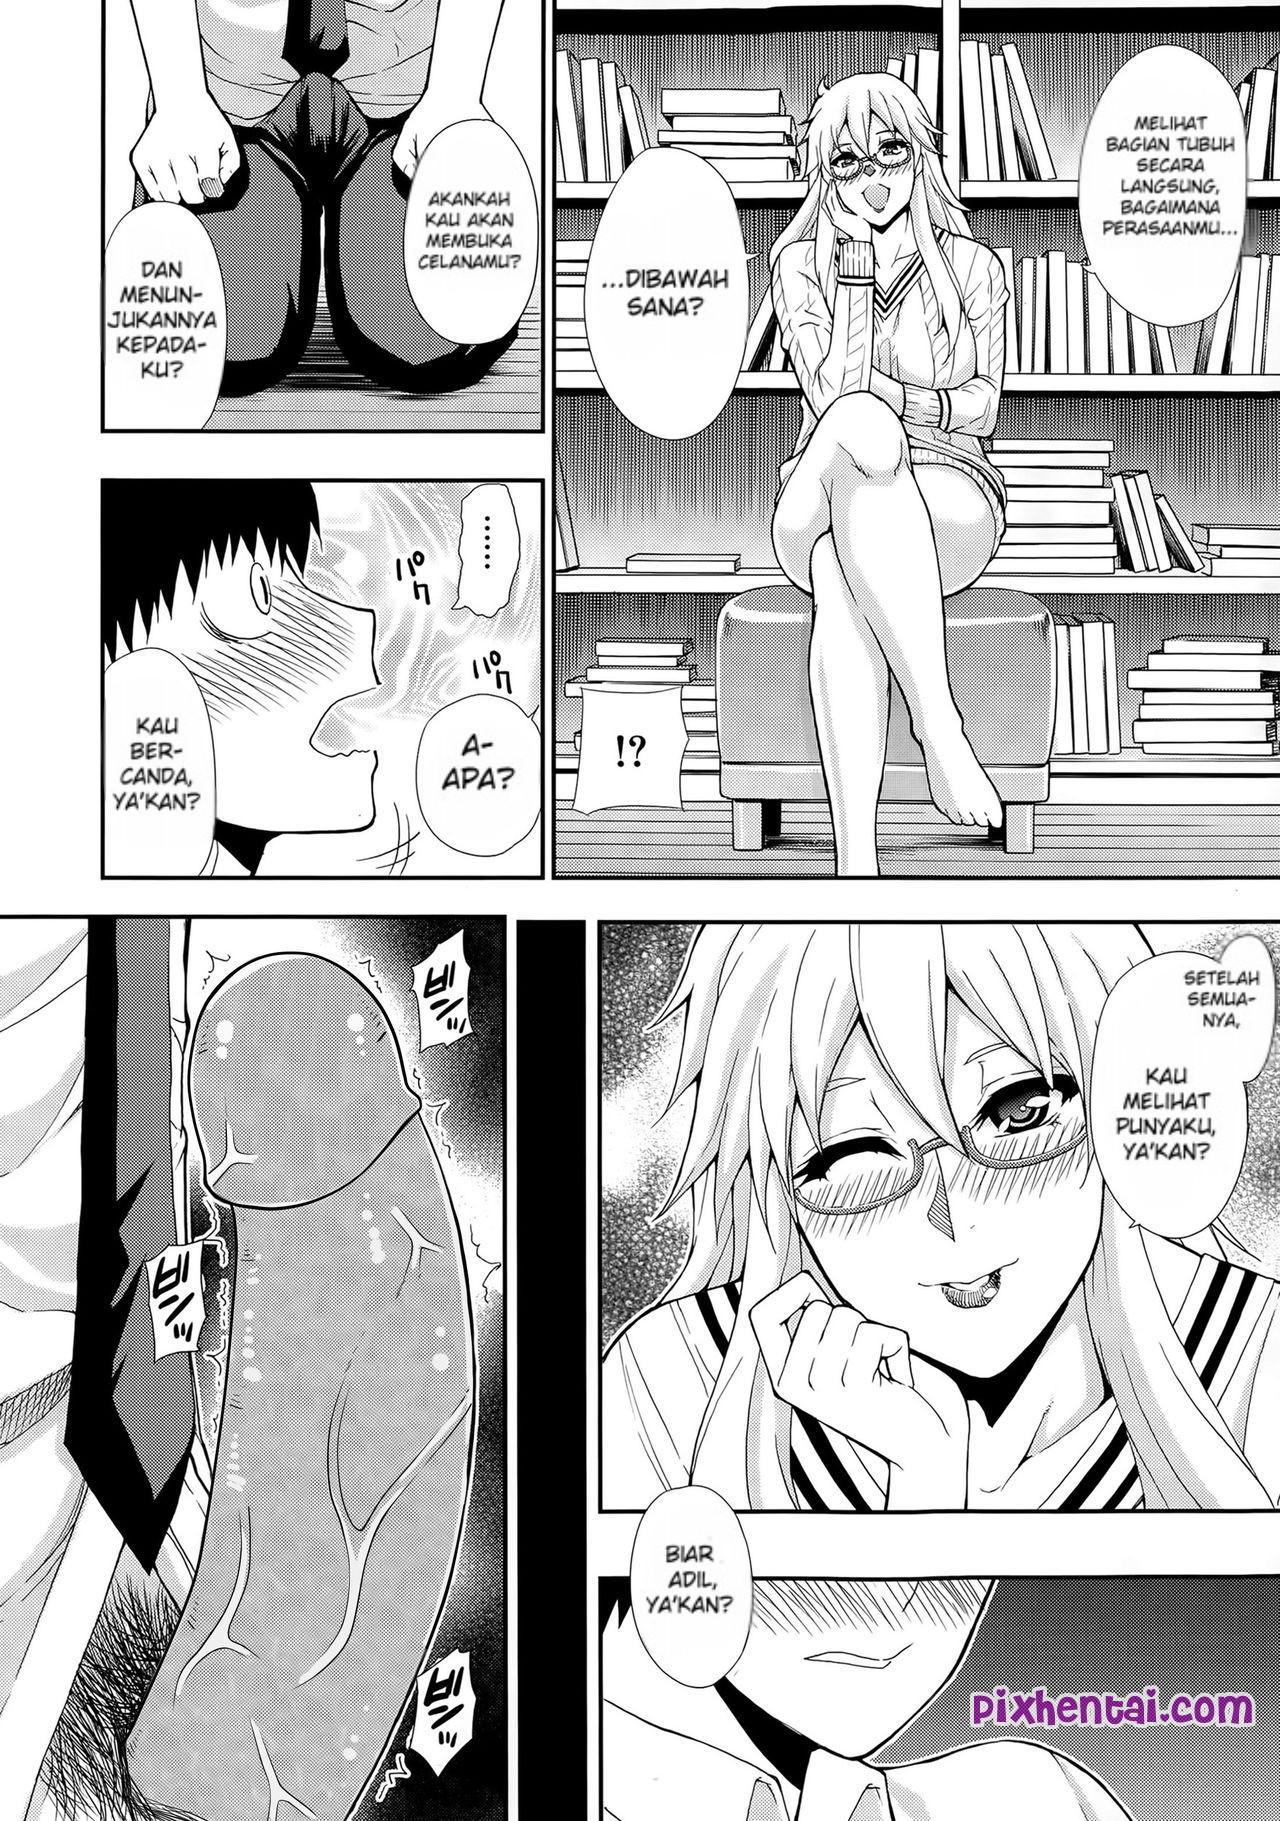 Komik hentai xxx manga sex bokep sange melihat tante nungging 09